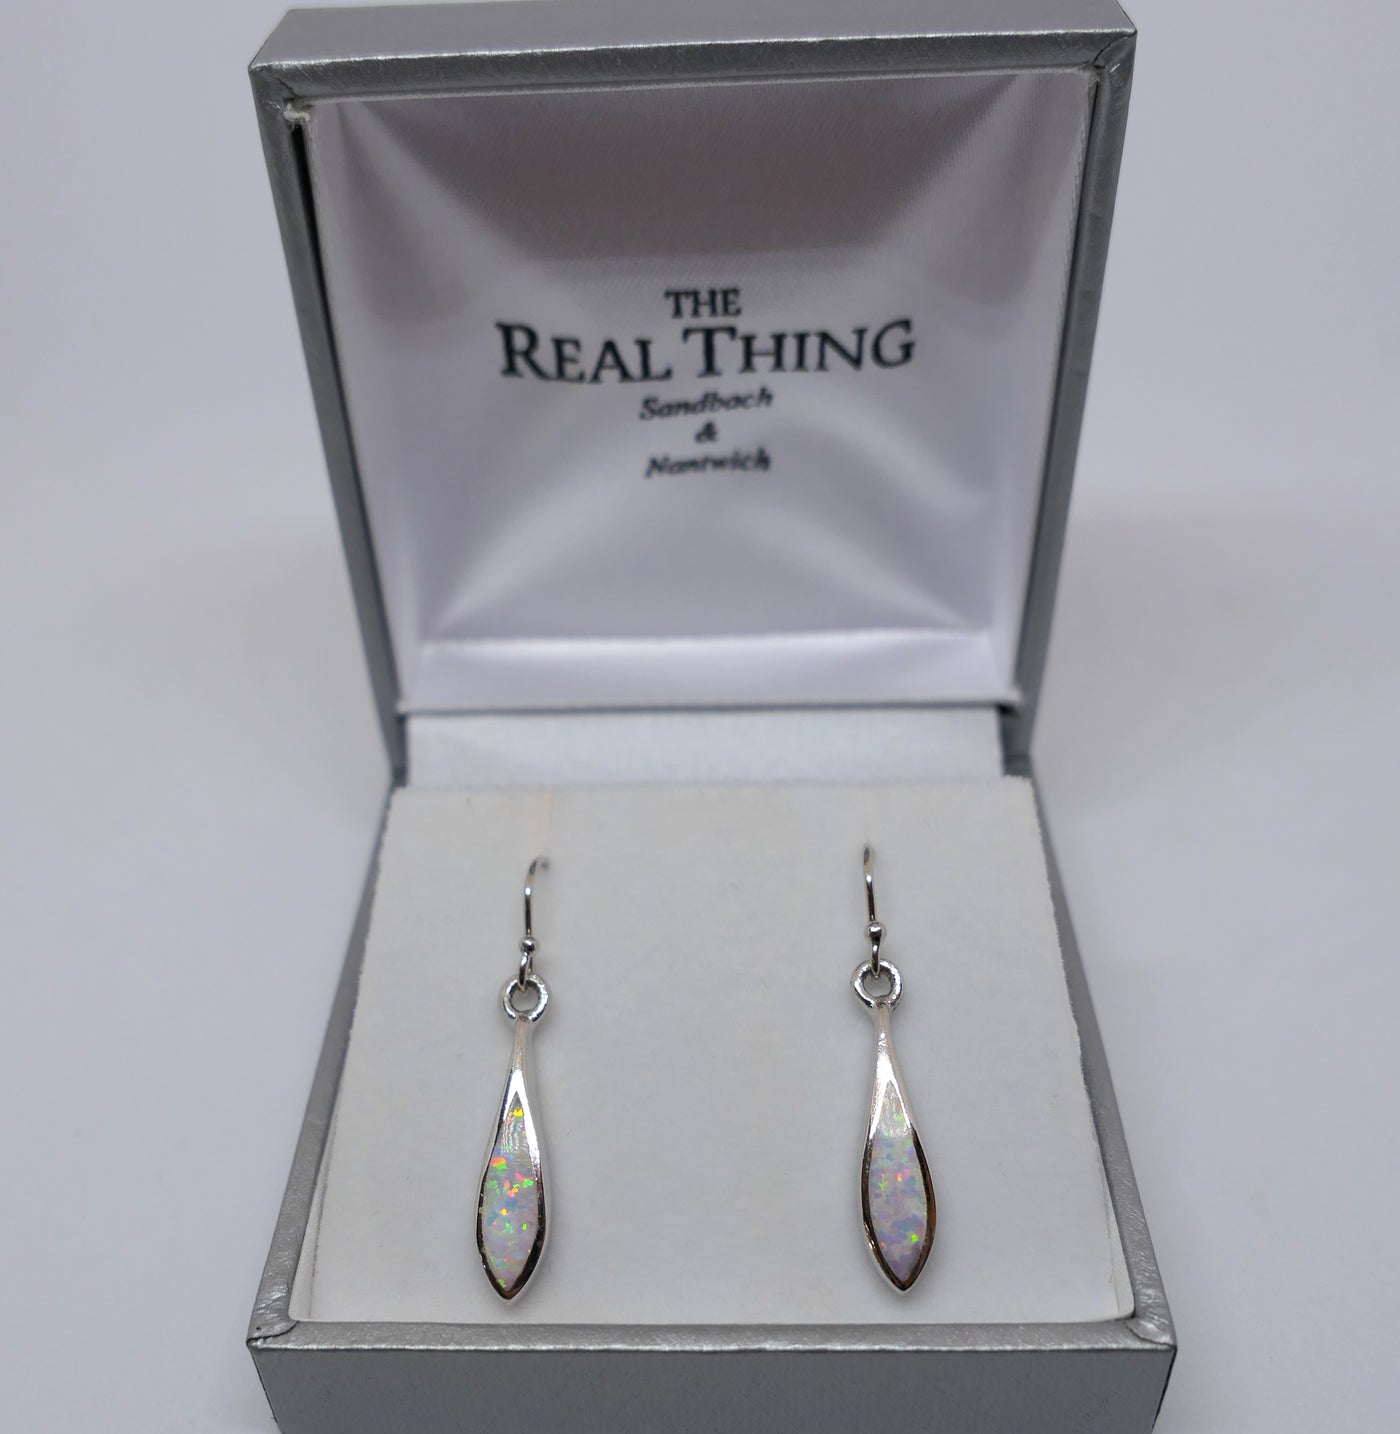 White Opal Marquis Drop Earrings